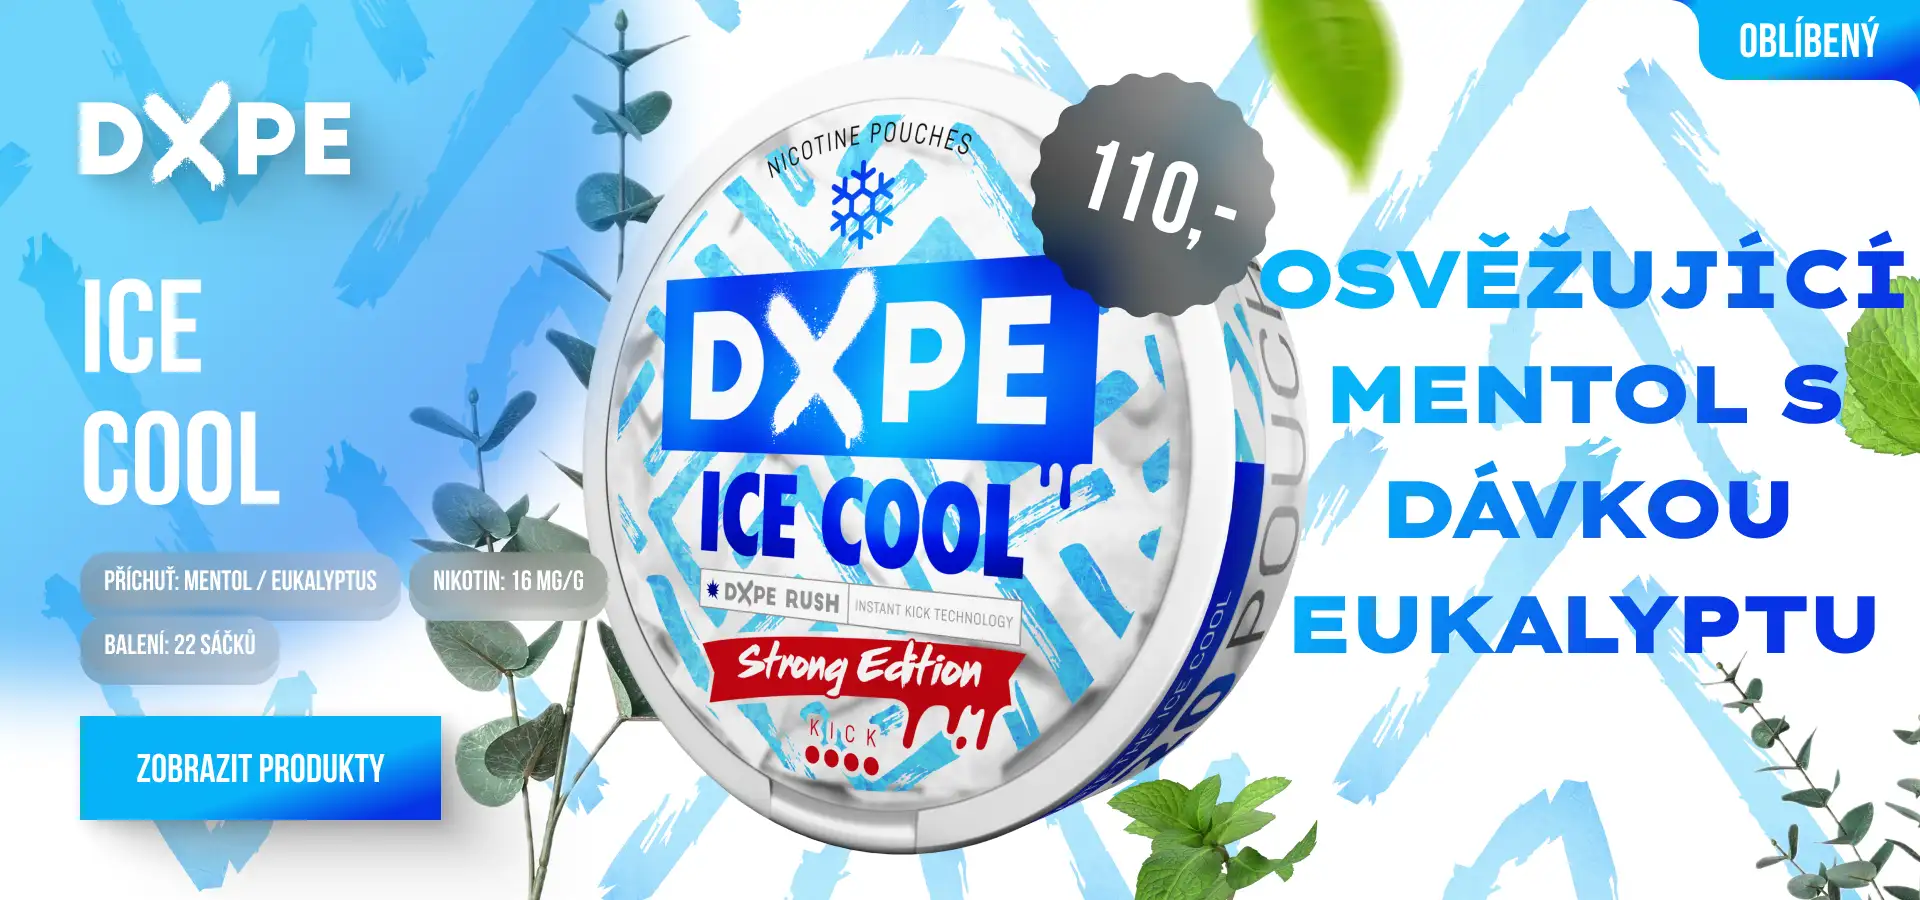 DXPE ICE COOL: Osvěžující mentol s dávkou eukalyptu